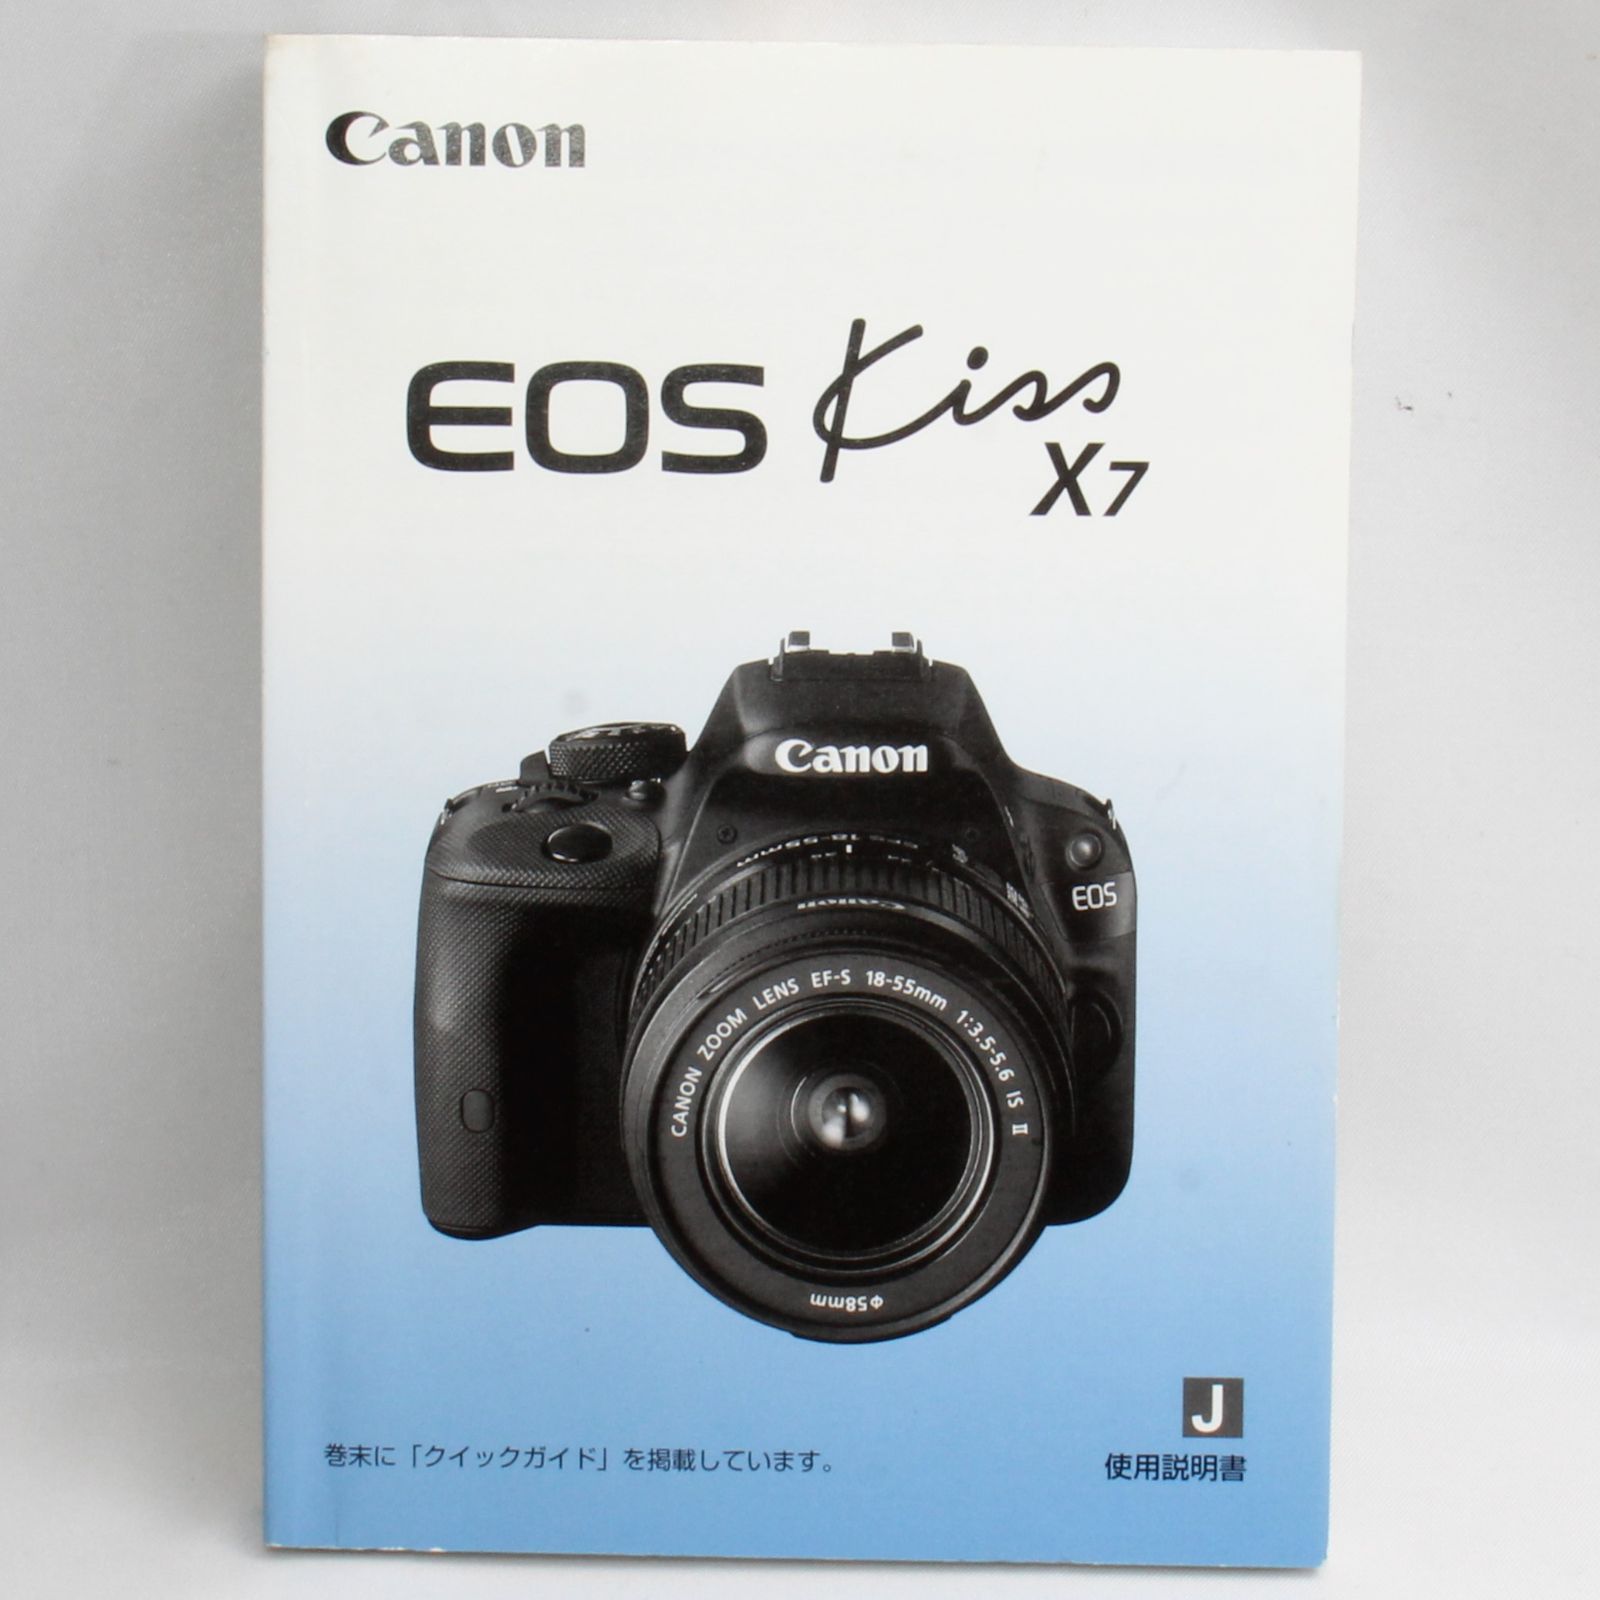 キヤノン Canon EOS Kiss X7 取扱使用説明書 - カメラ、光学機器